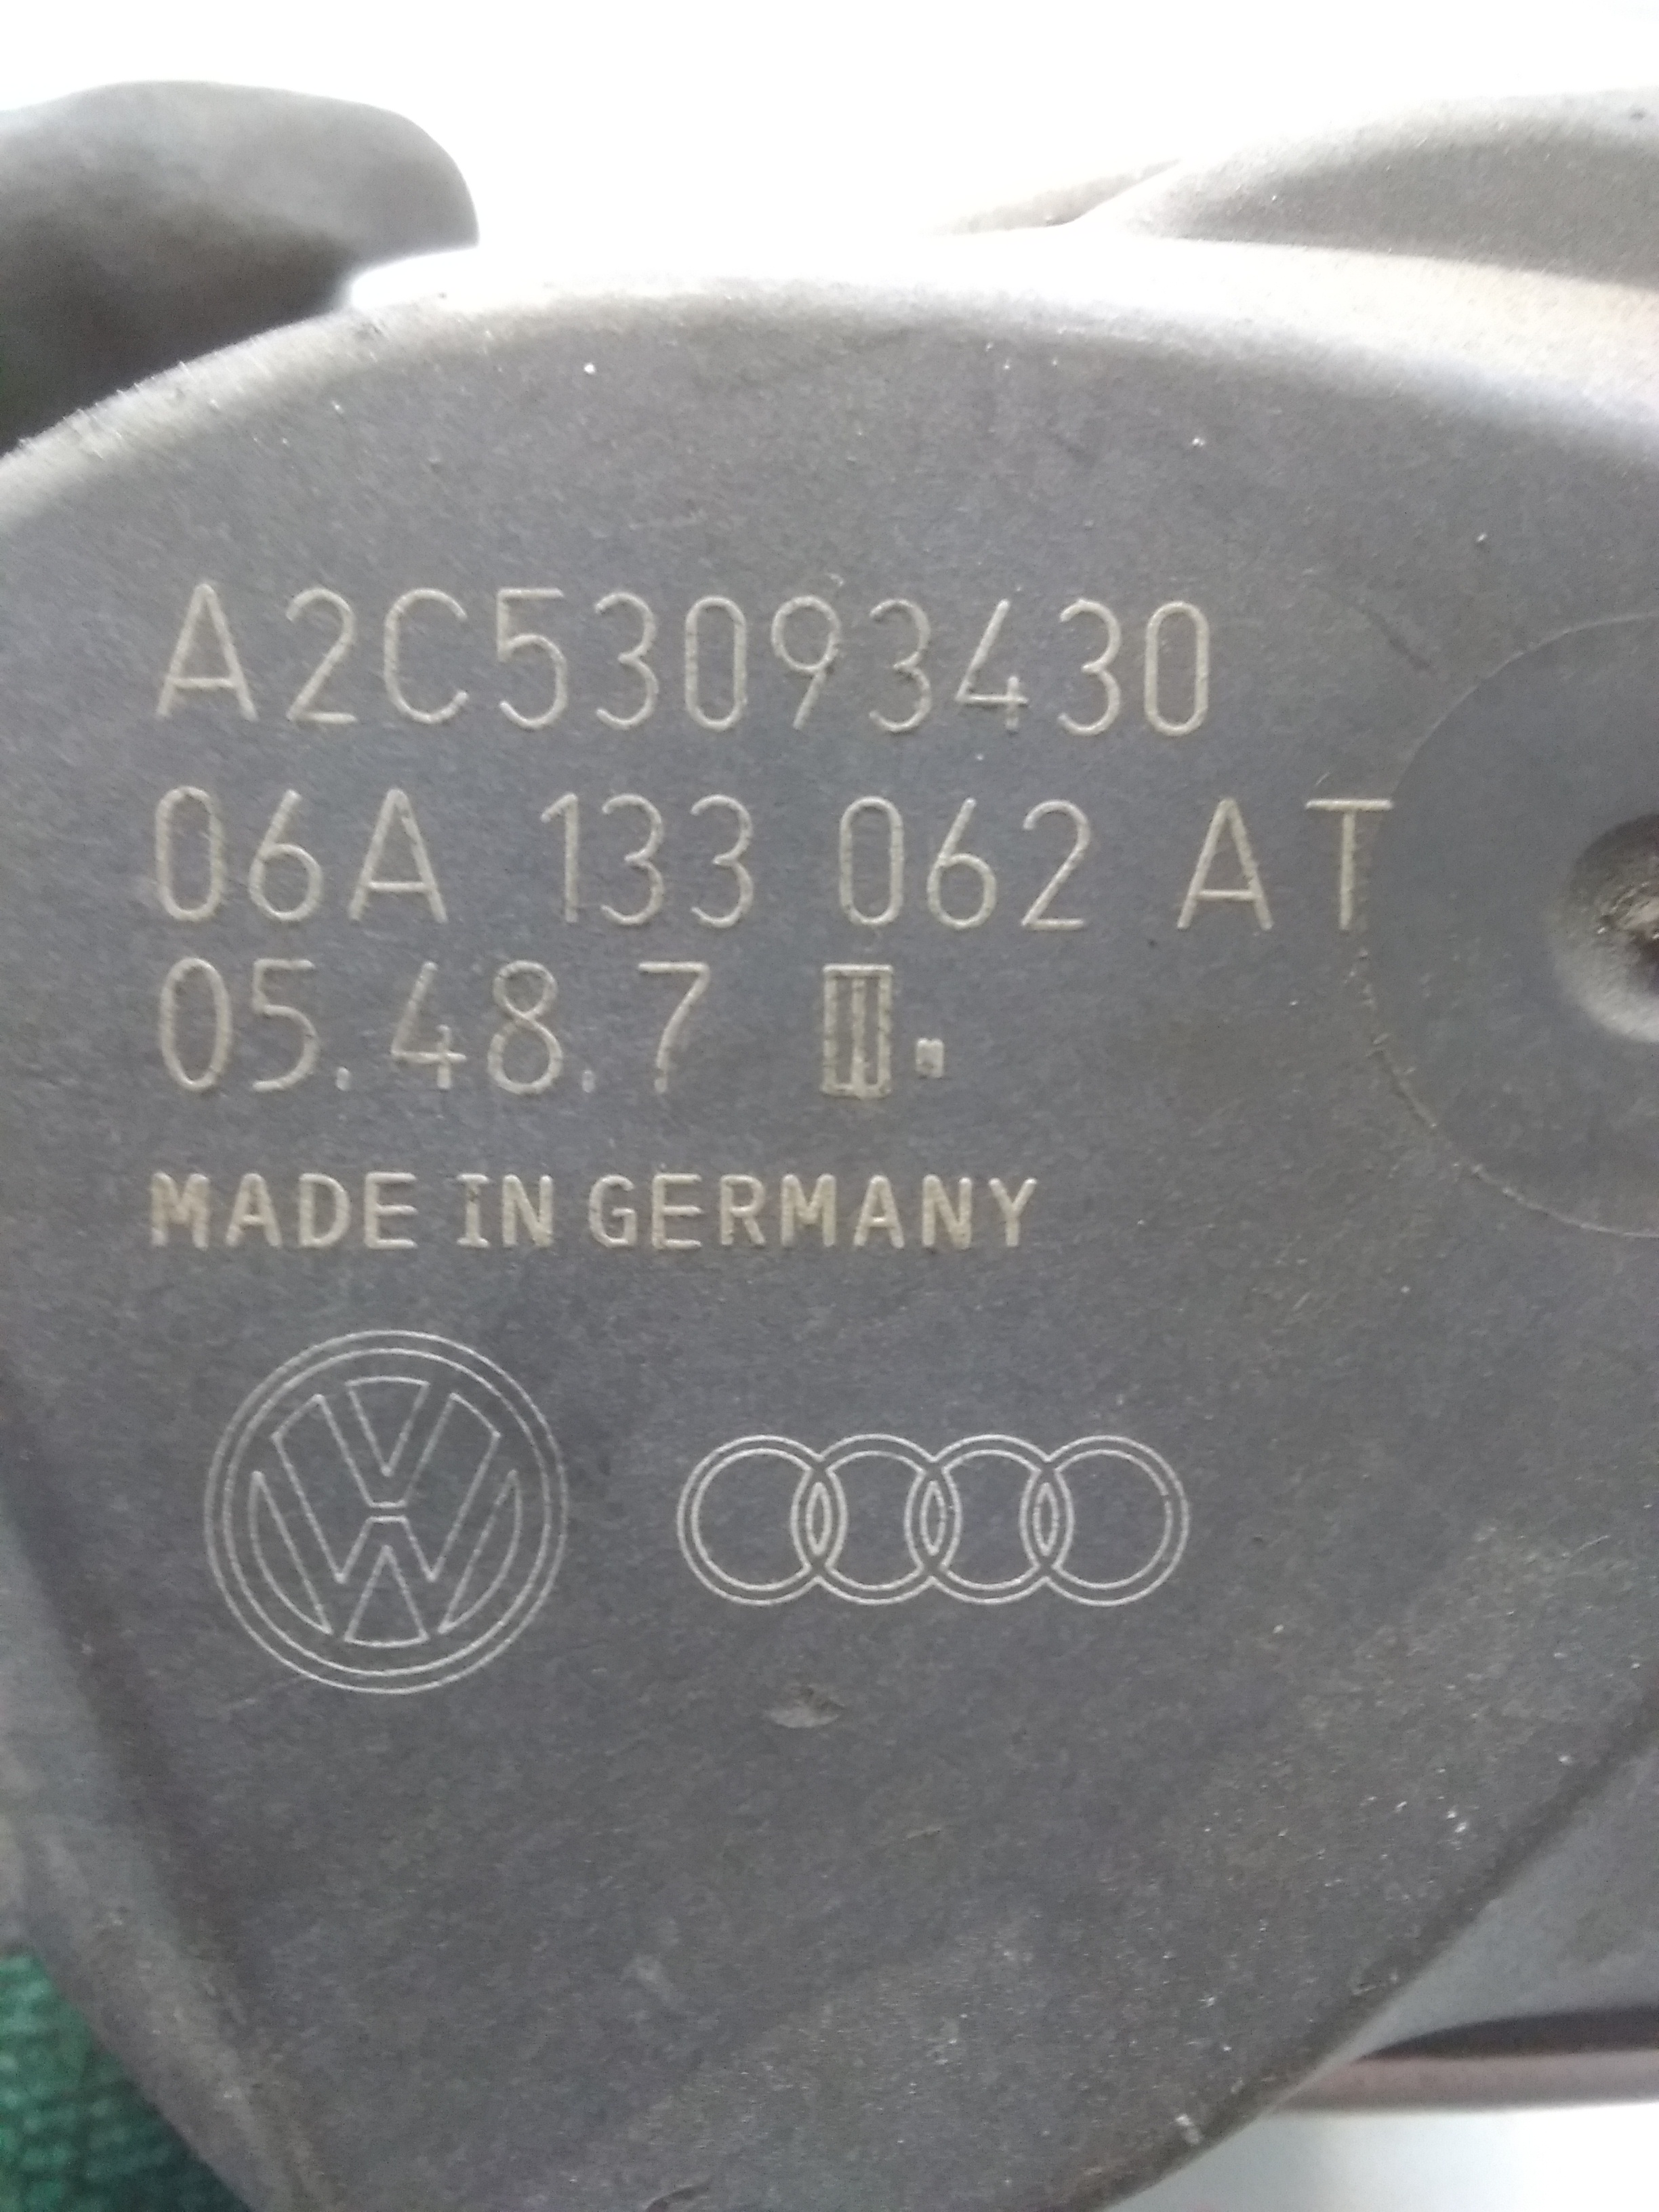 VW Golf 5 original Drosselklappe 06A133062AT BJ2006